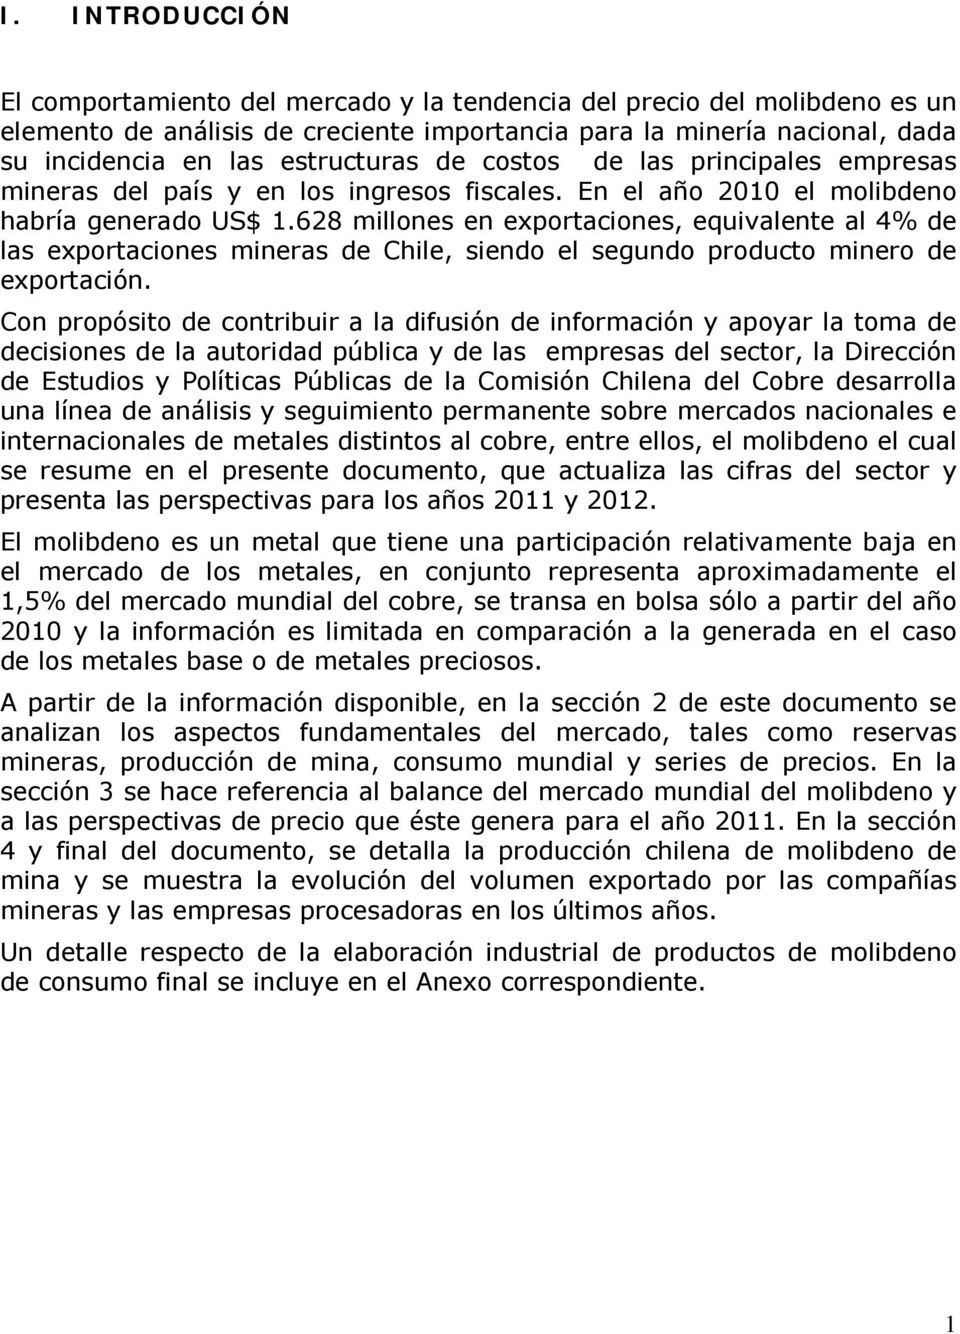 628 millones en exportaciones, equivalente al 4% de las exportaciones mineras de Chile, siendo el segundo producto minero de exportación.